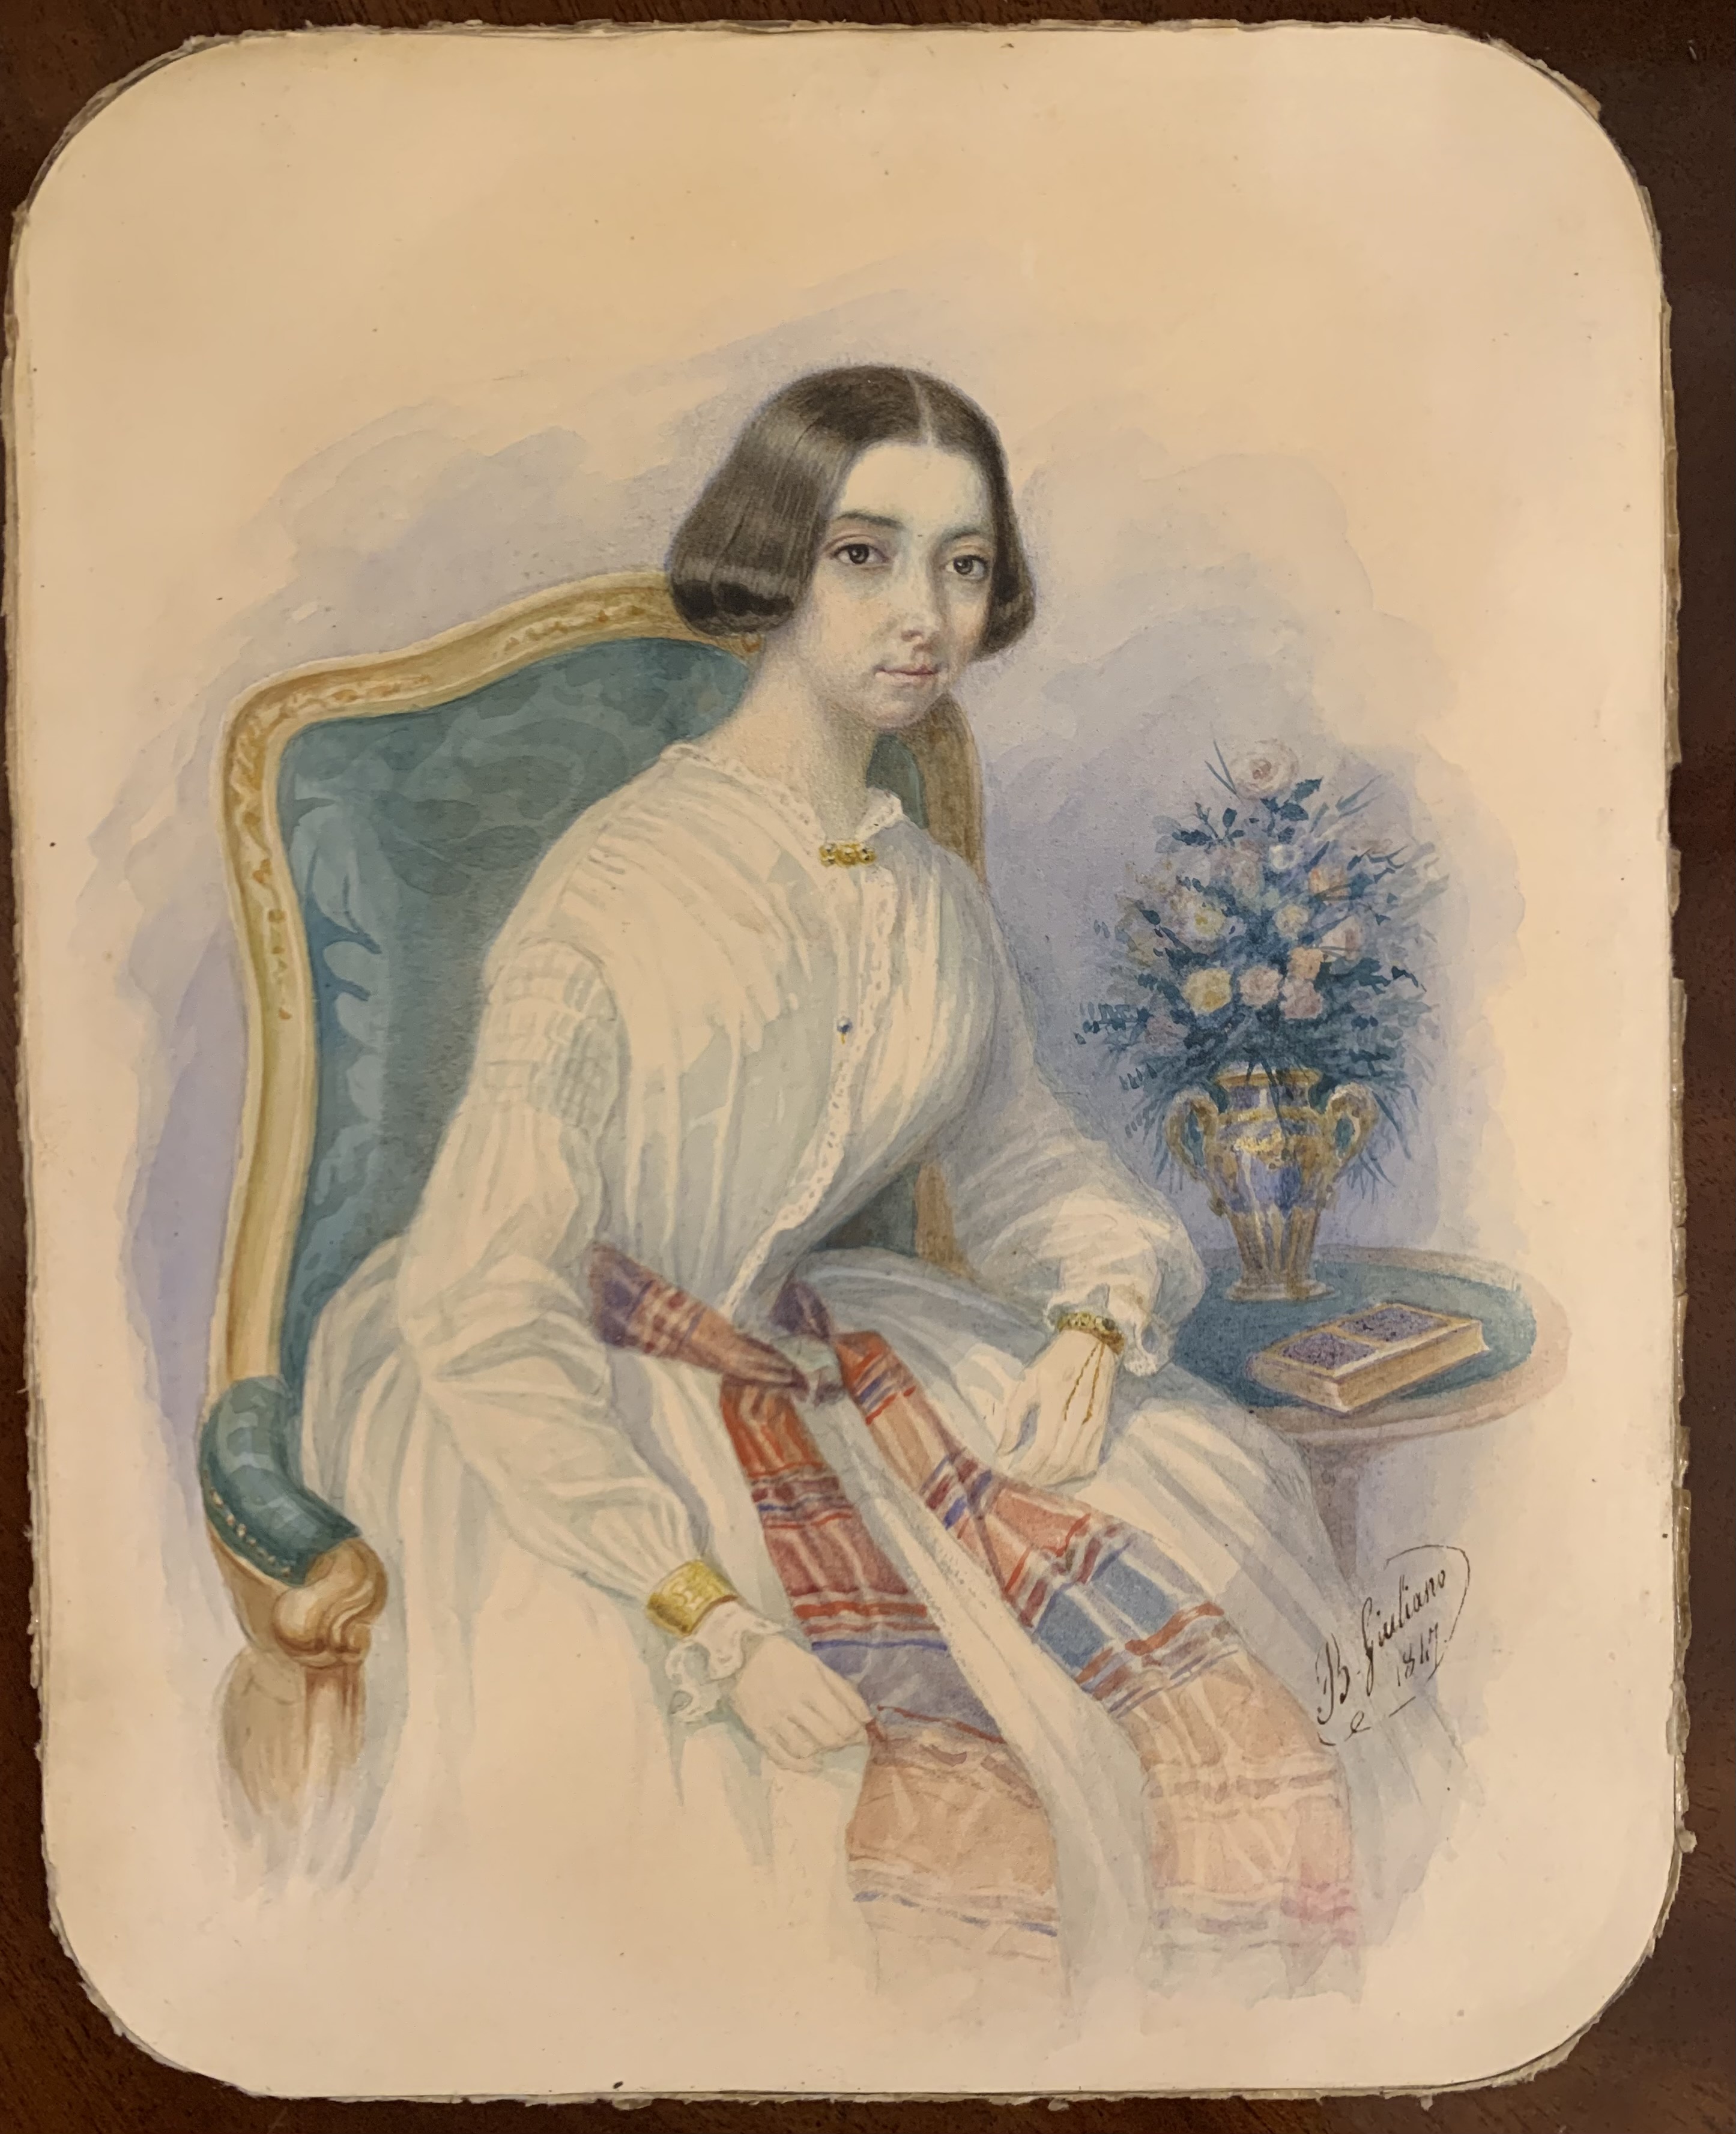 Джулиано Б., Женский портрет, 1847 г.